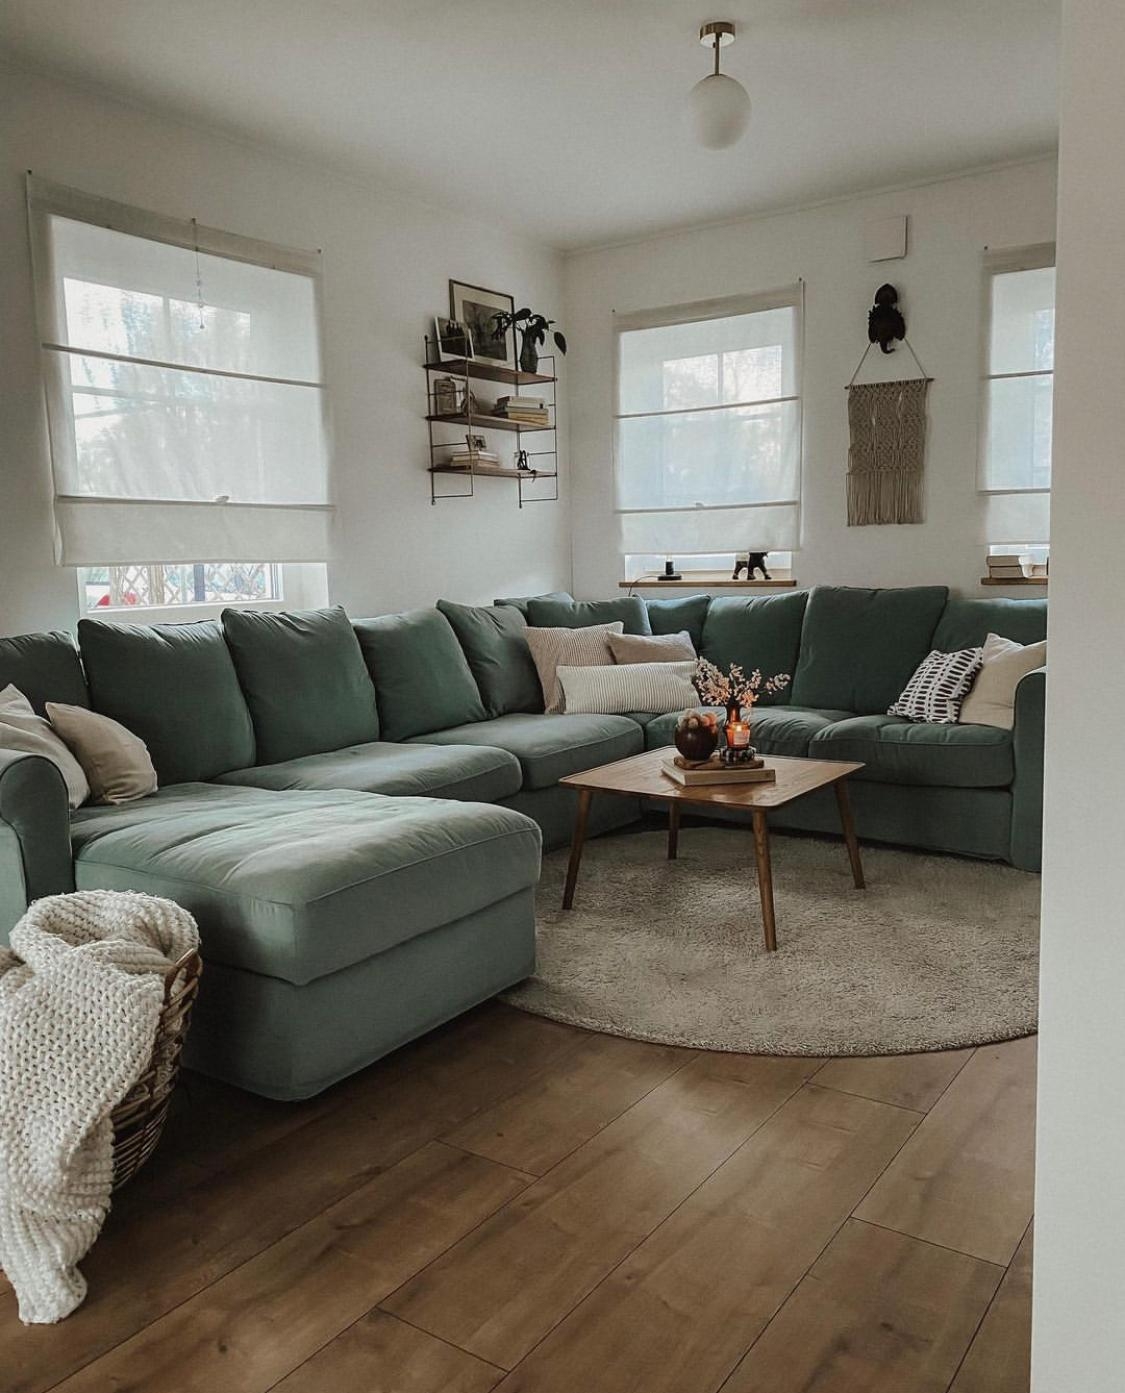 #wohnzimmer #sofaecke #couch #gemütlich #skandinavisch #couchstyle #couchliebt